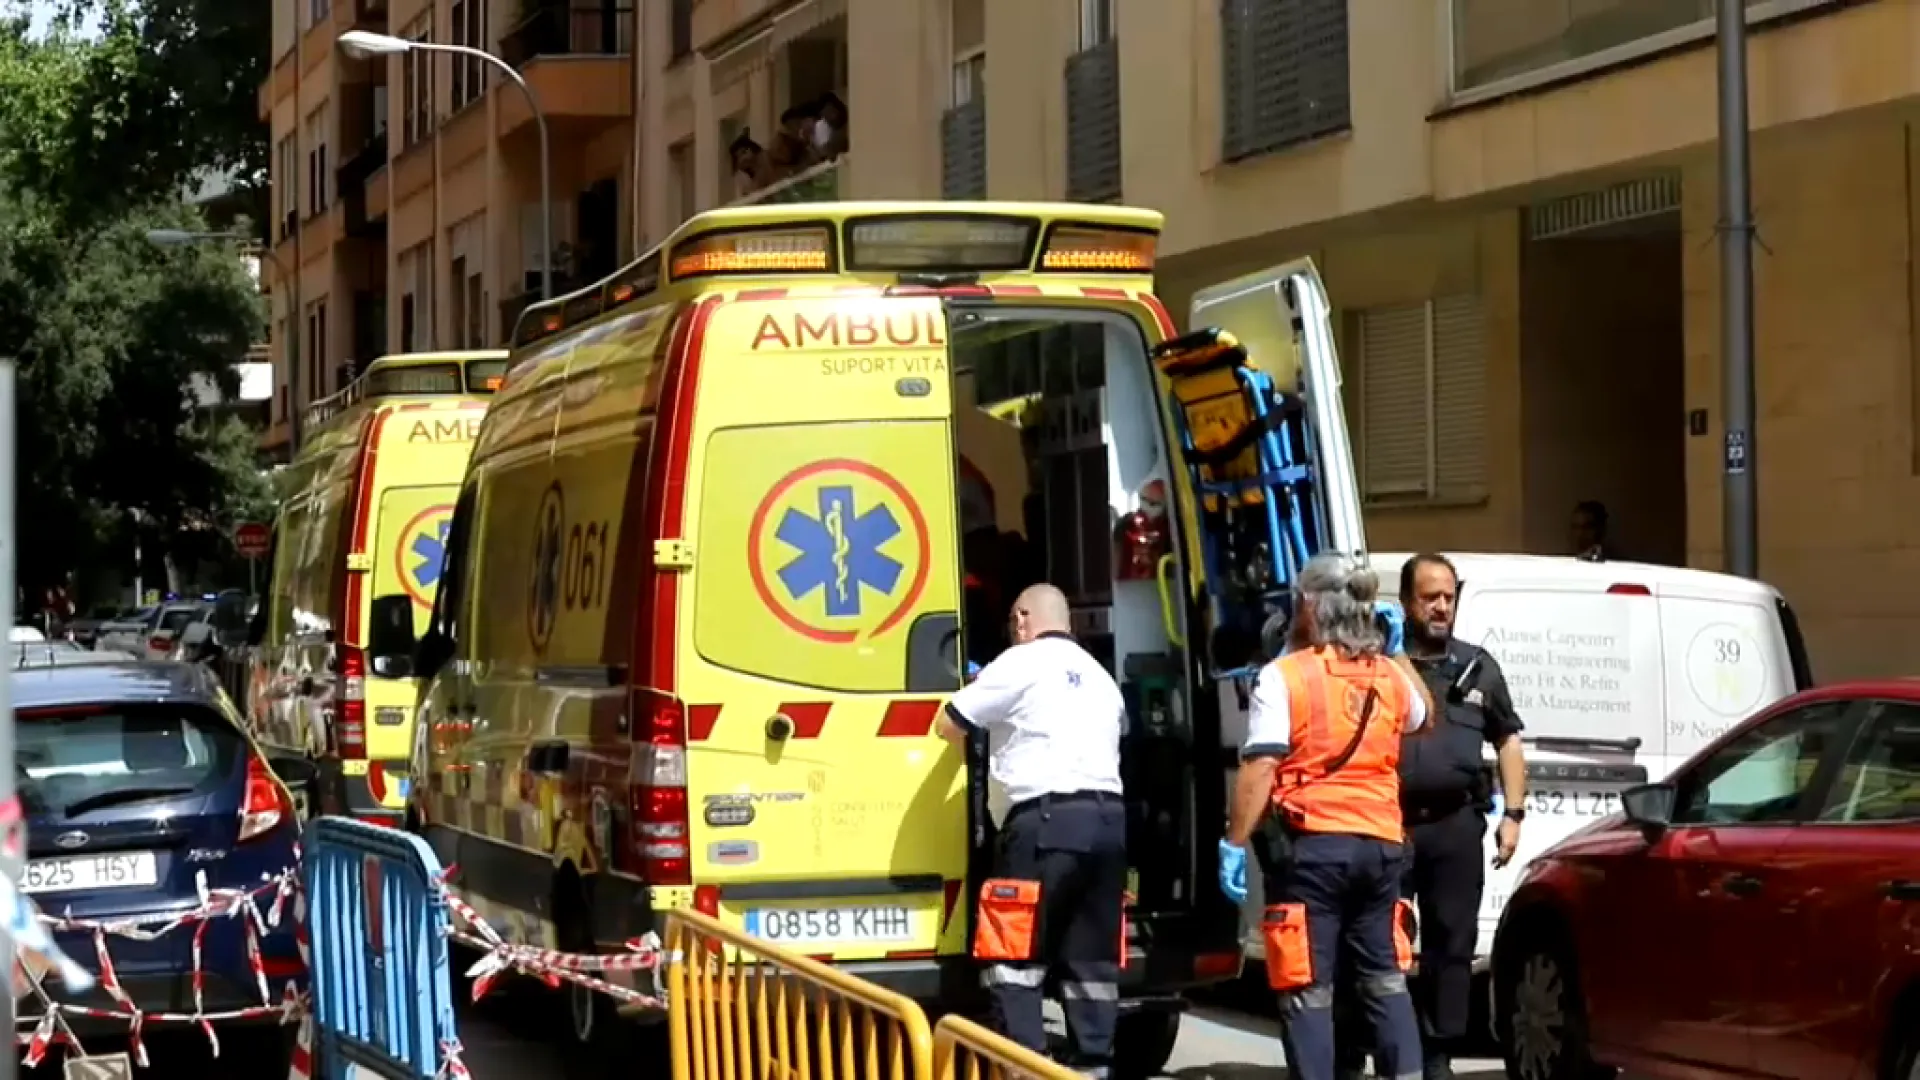 Ferit un infant després de caure des d’una finestra d’un segon pis a Palma